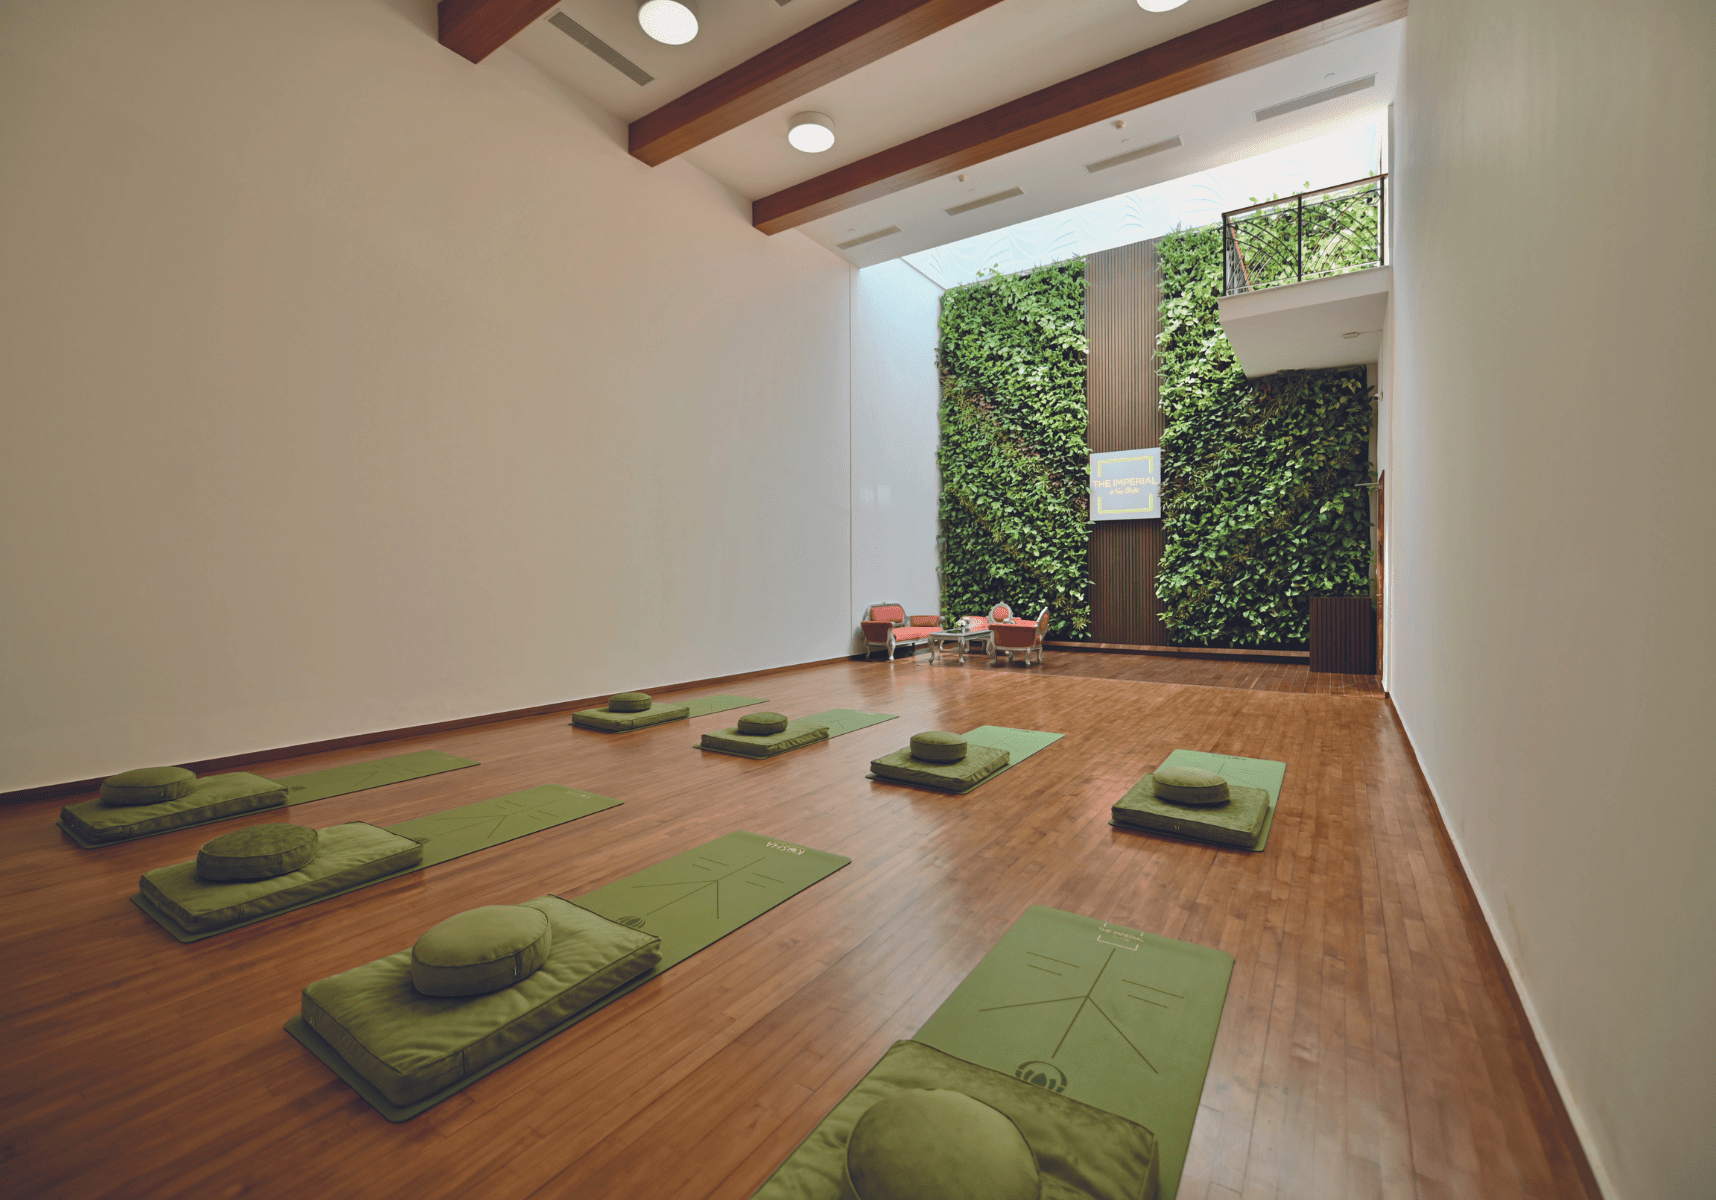 Amazing Spaces - Yoga Sanctum